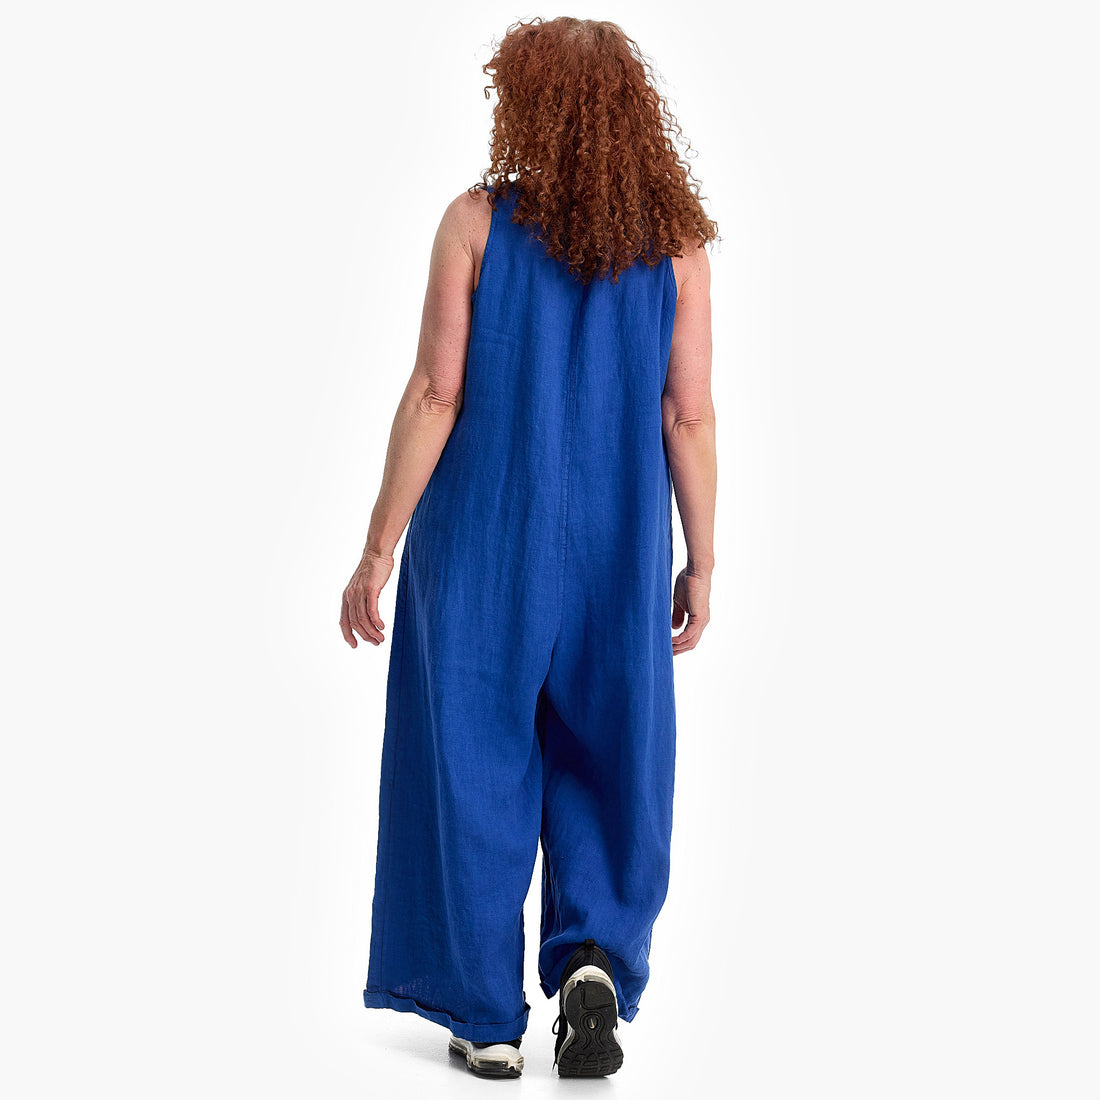 Jumpsuit von Do Your Best aus Leinen in gerader Form, FS246.D656, Kobaltblau, Ausgefallen